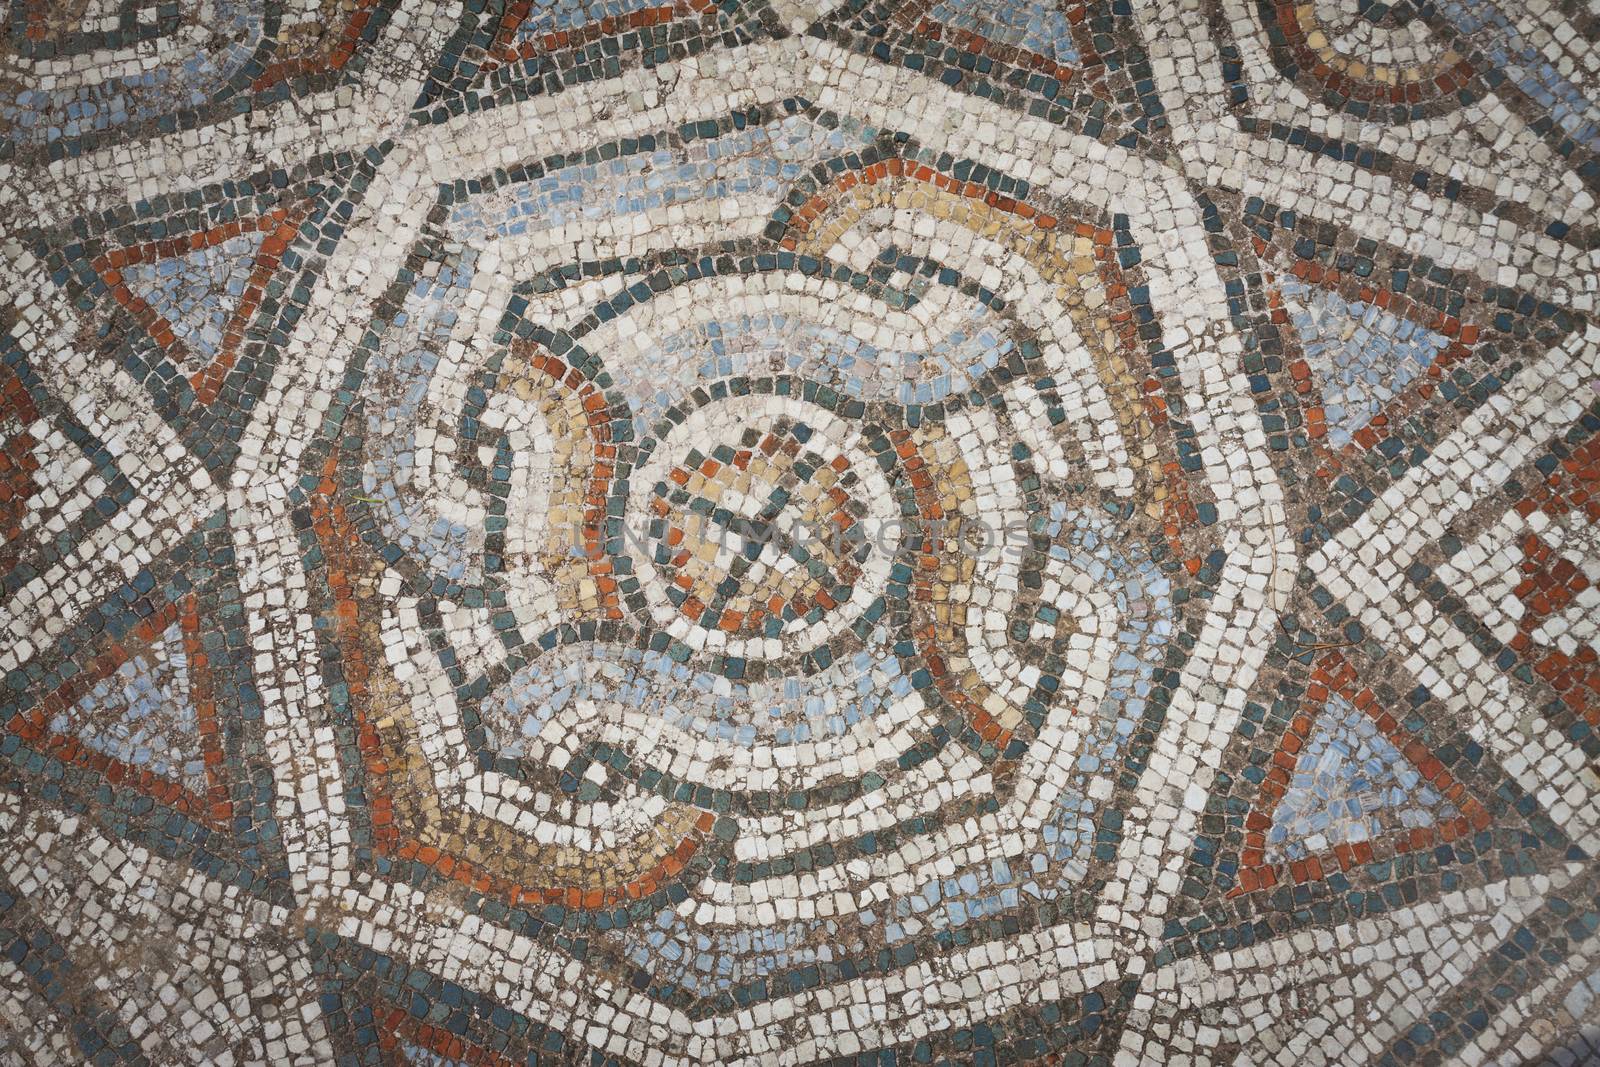 Mosaic pattern from floor near gymnasium at Sardis in Turkey